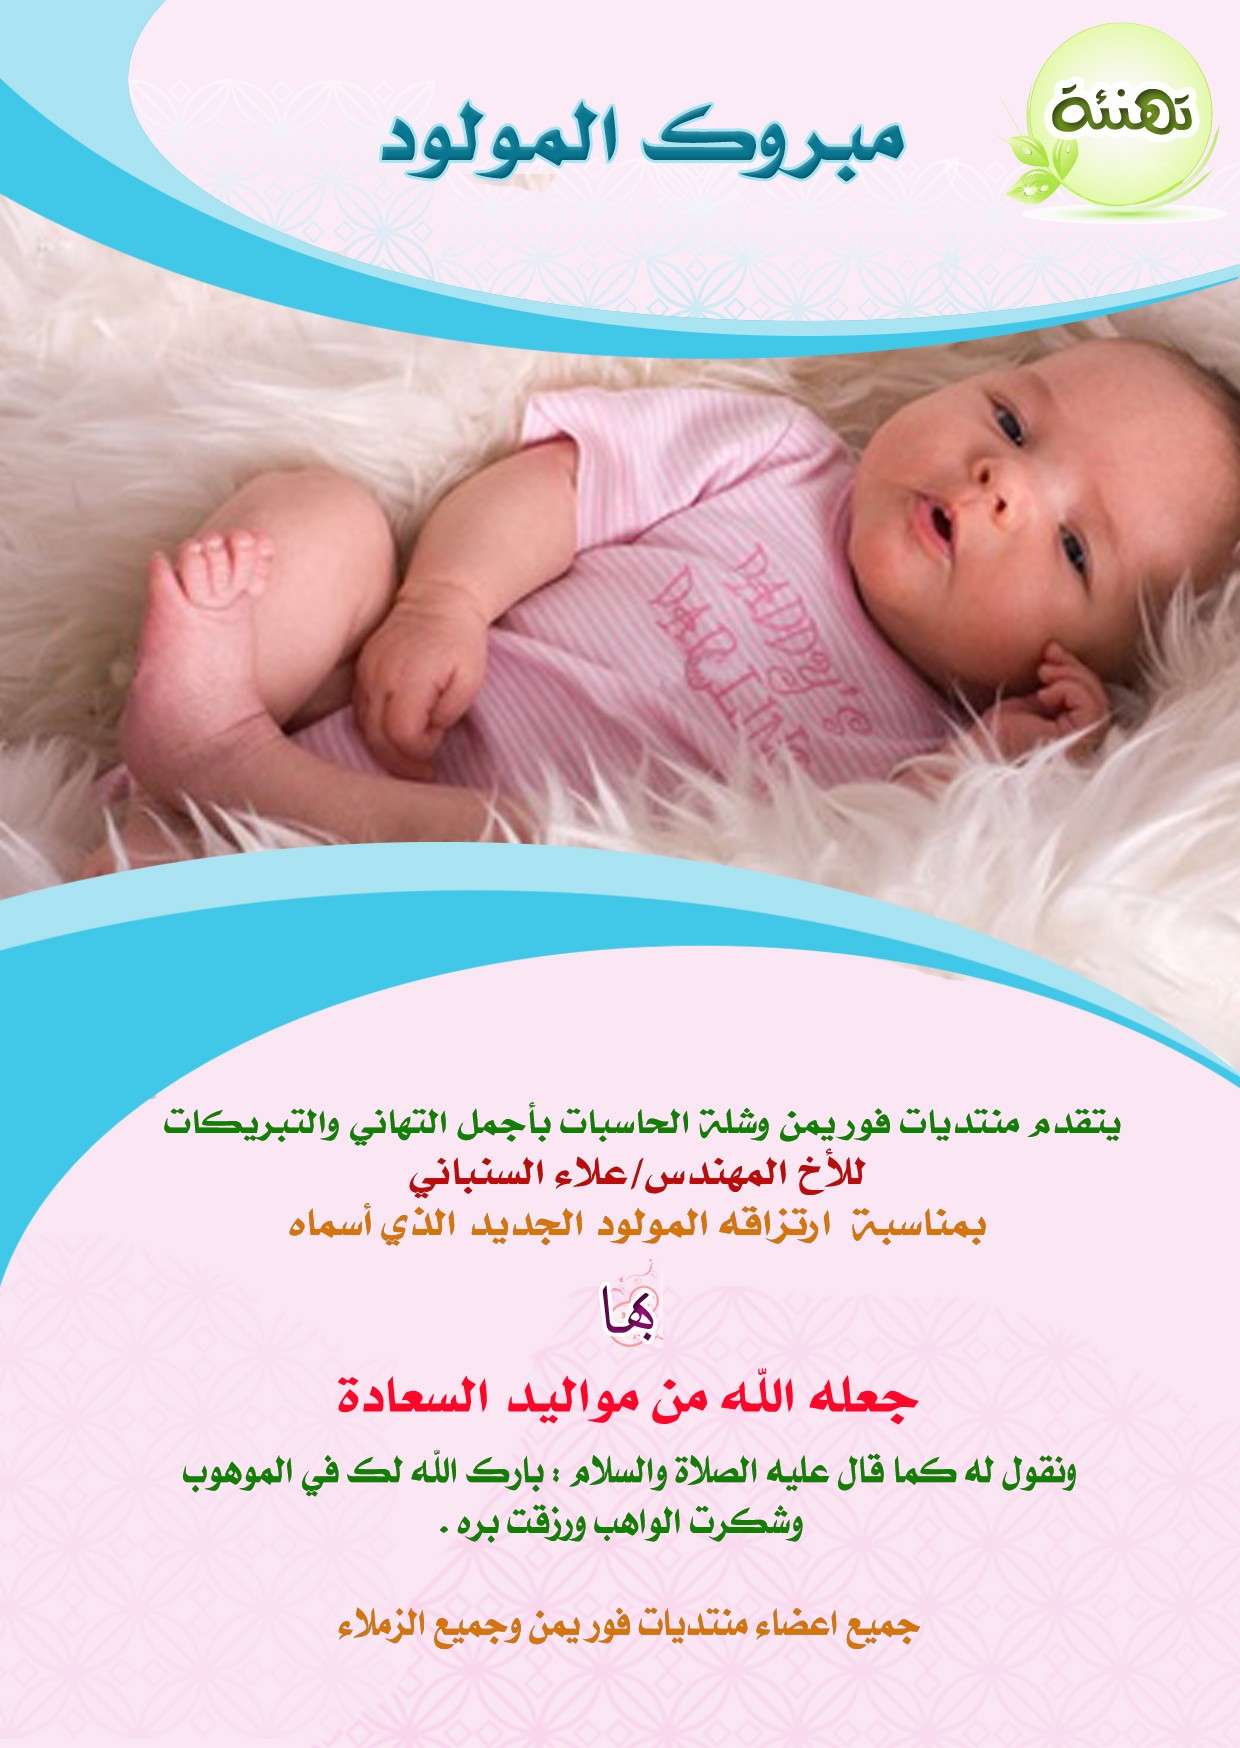 مبروك للمهندس علاء المولودالجديد O10